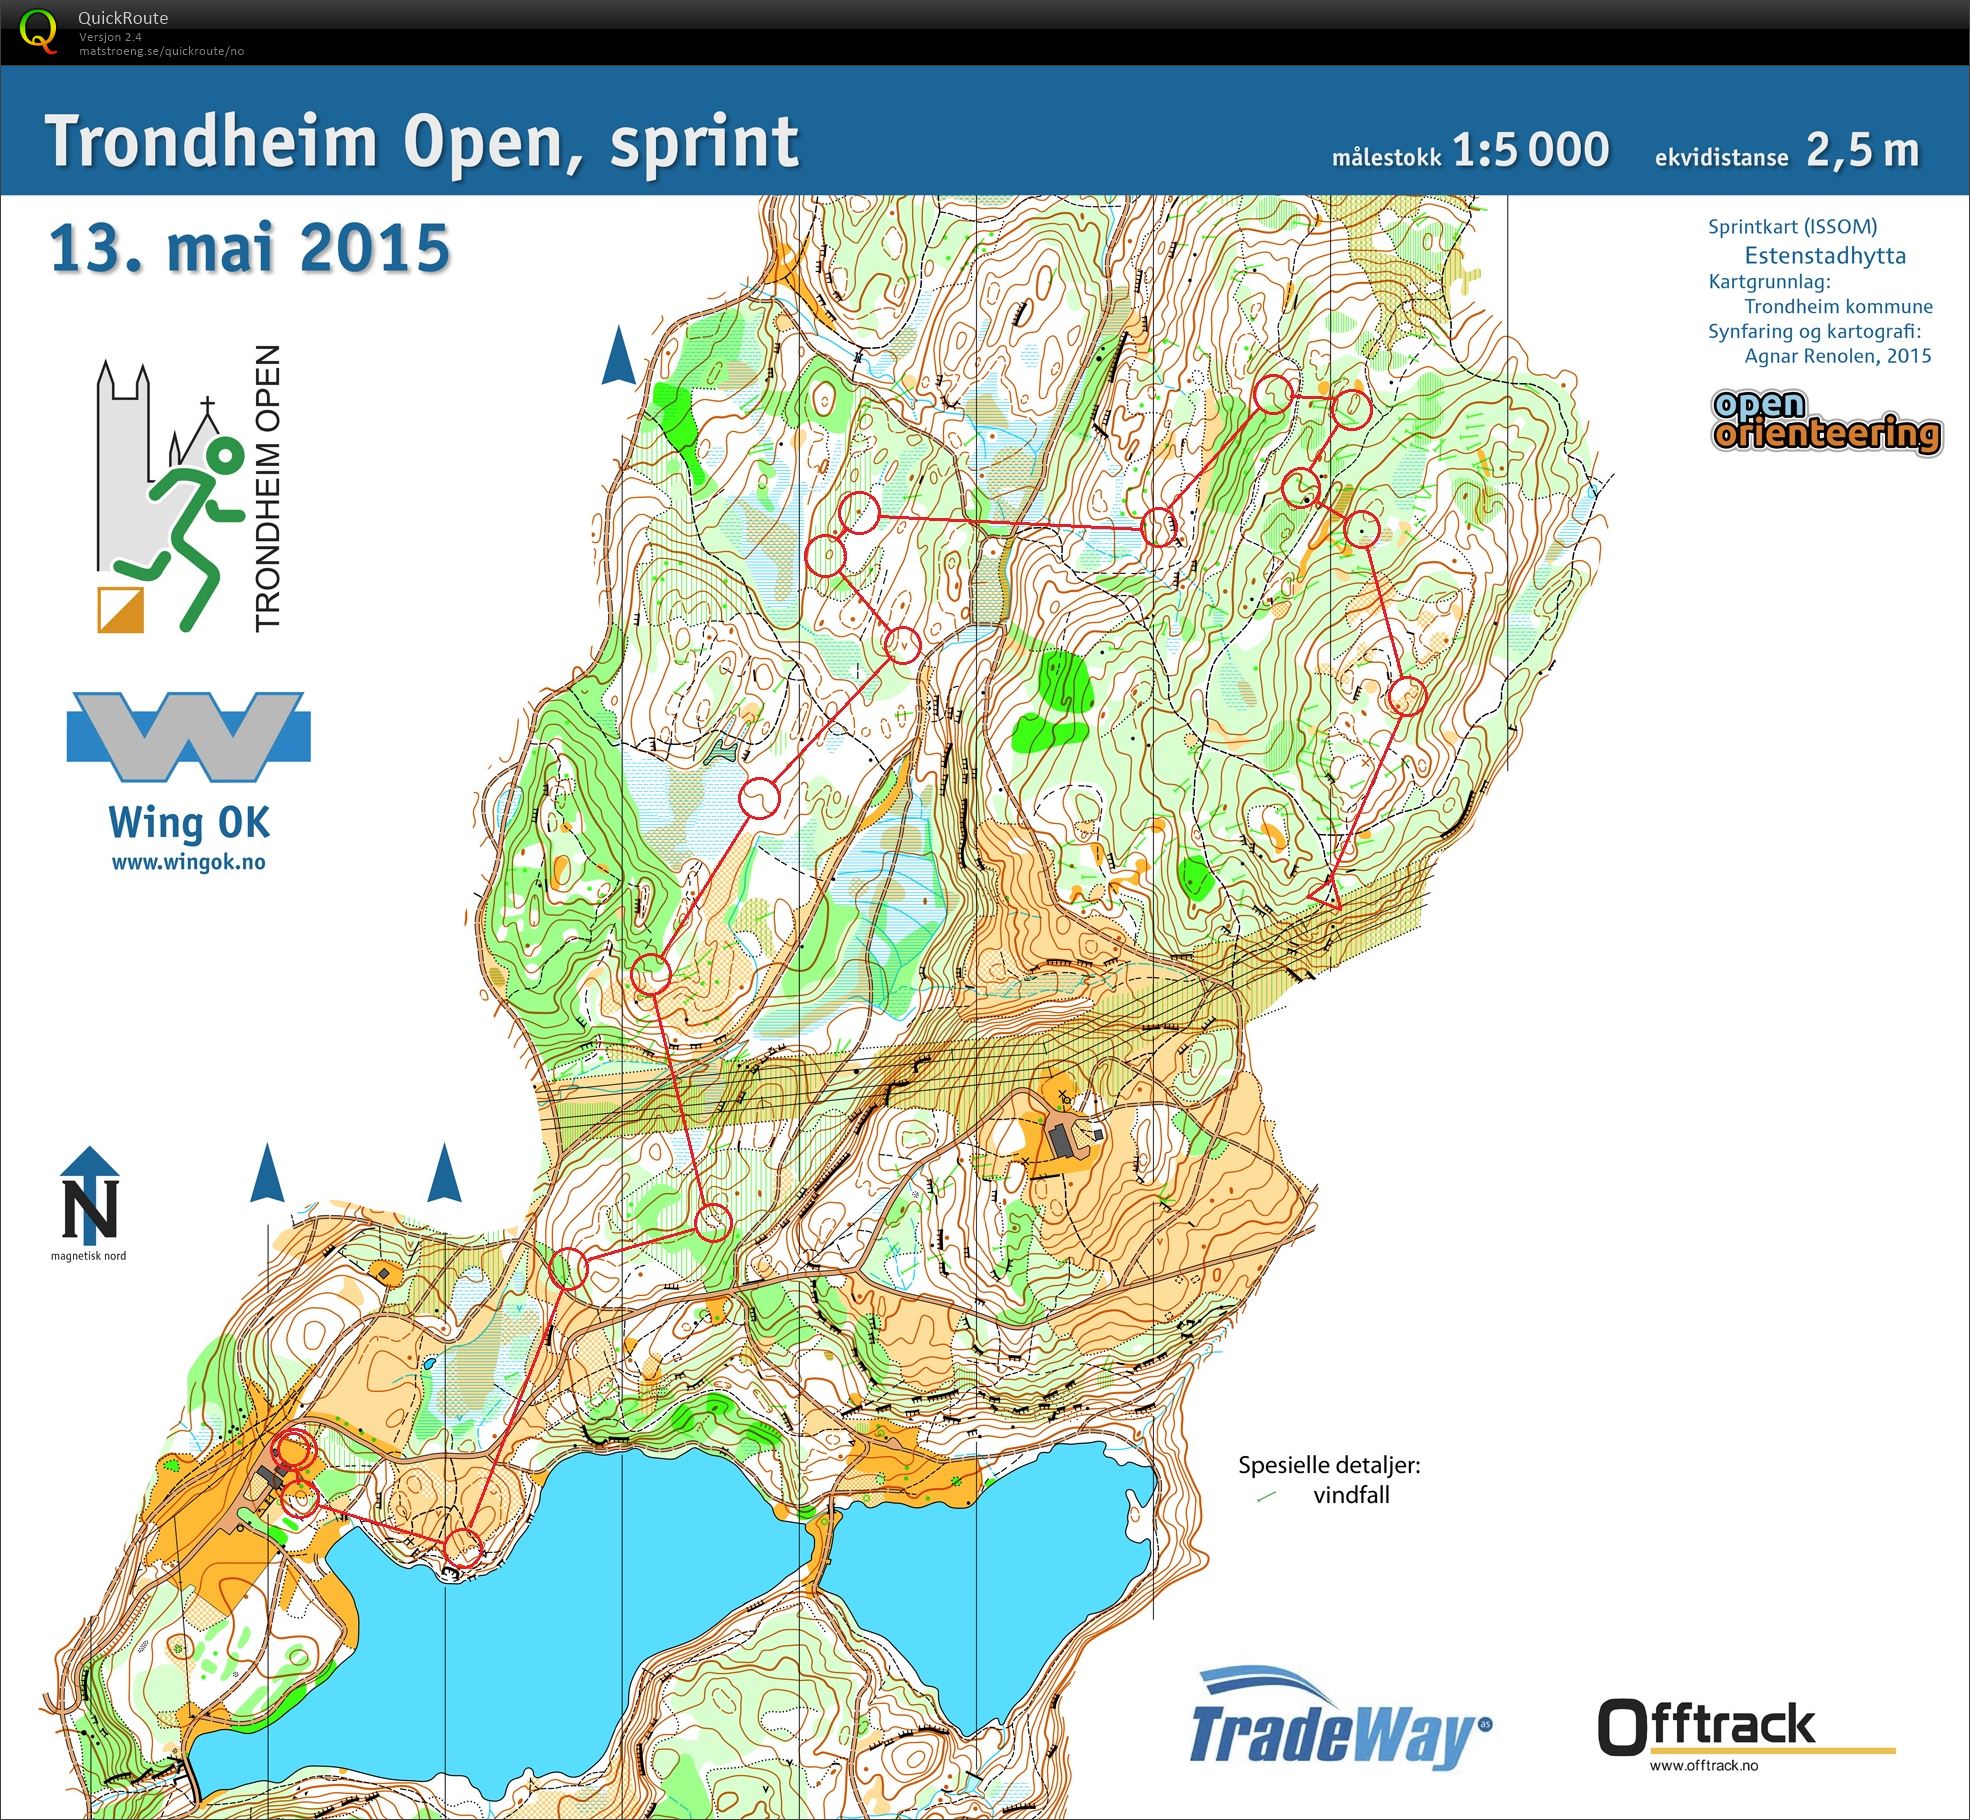 Trondheim Open, skogssprint (13-05-2015)